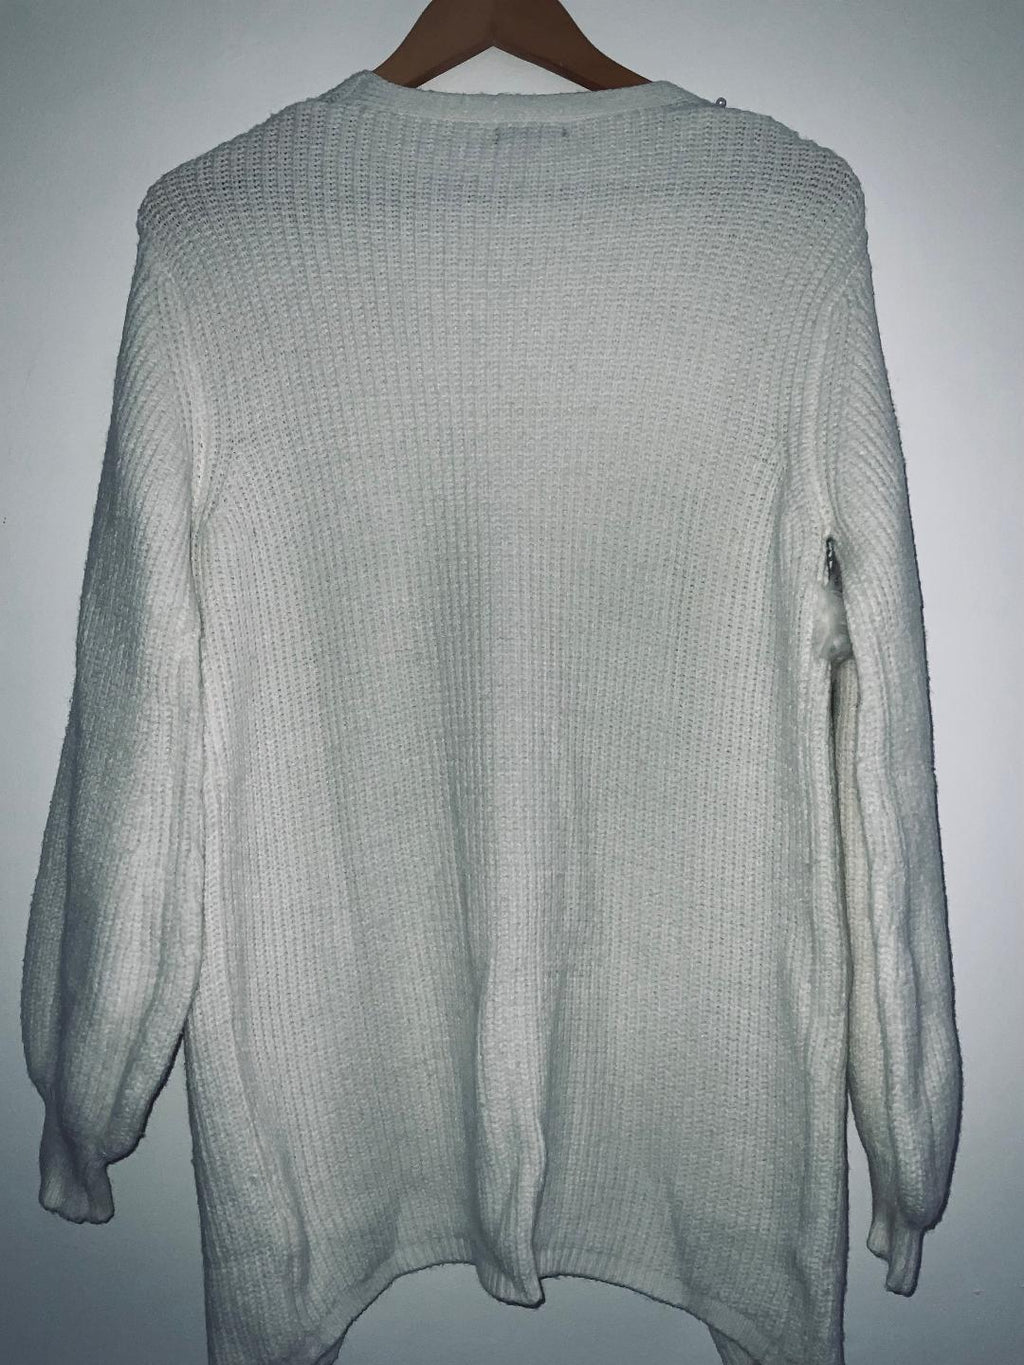 ELA Sweater largo con detalles en perlas. Talla 6